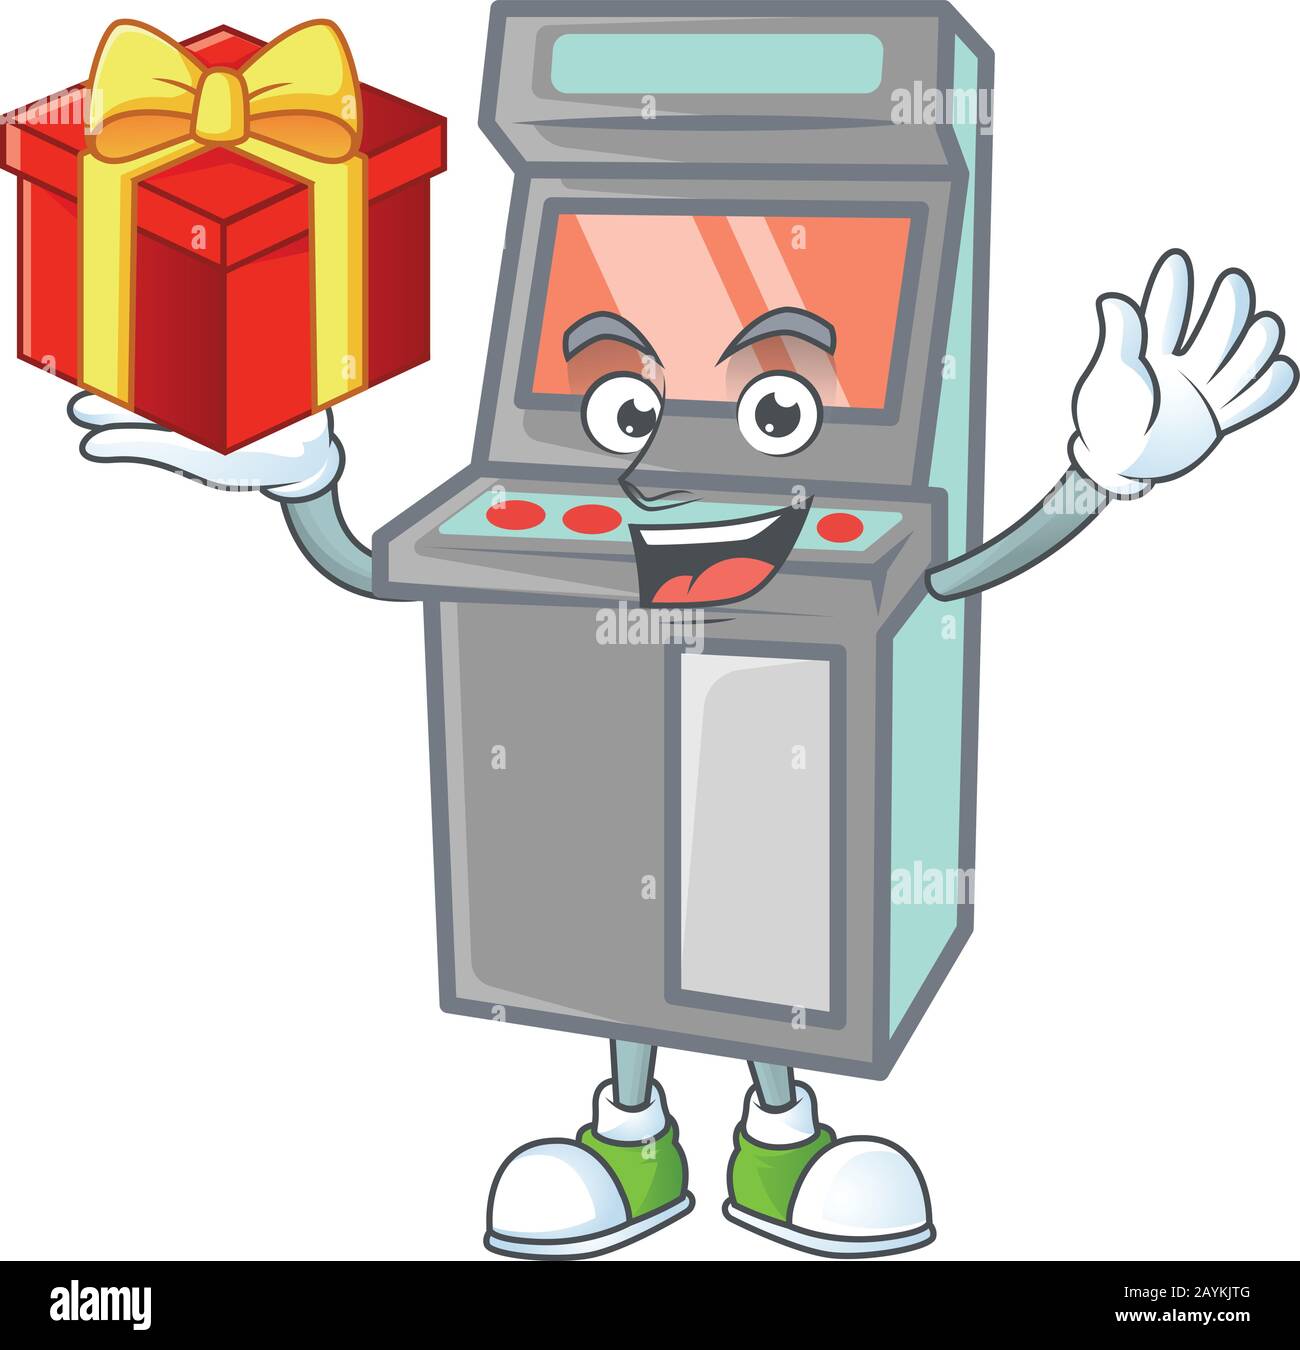 personnage de dessin animé de la machine de jeux d'arcade avec une boîte de cadeau Illustration de Vecteur